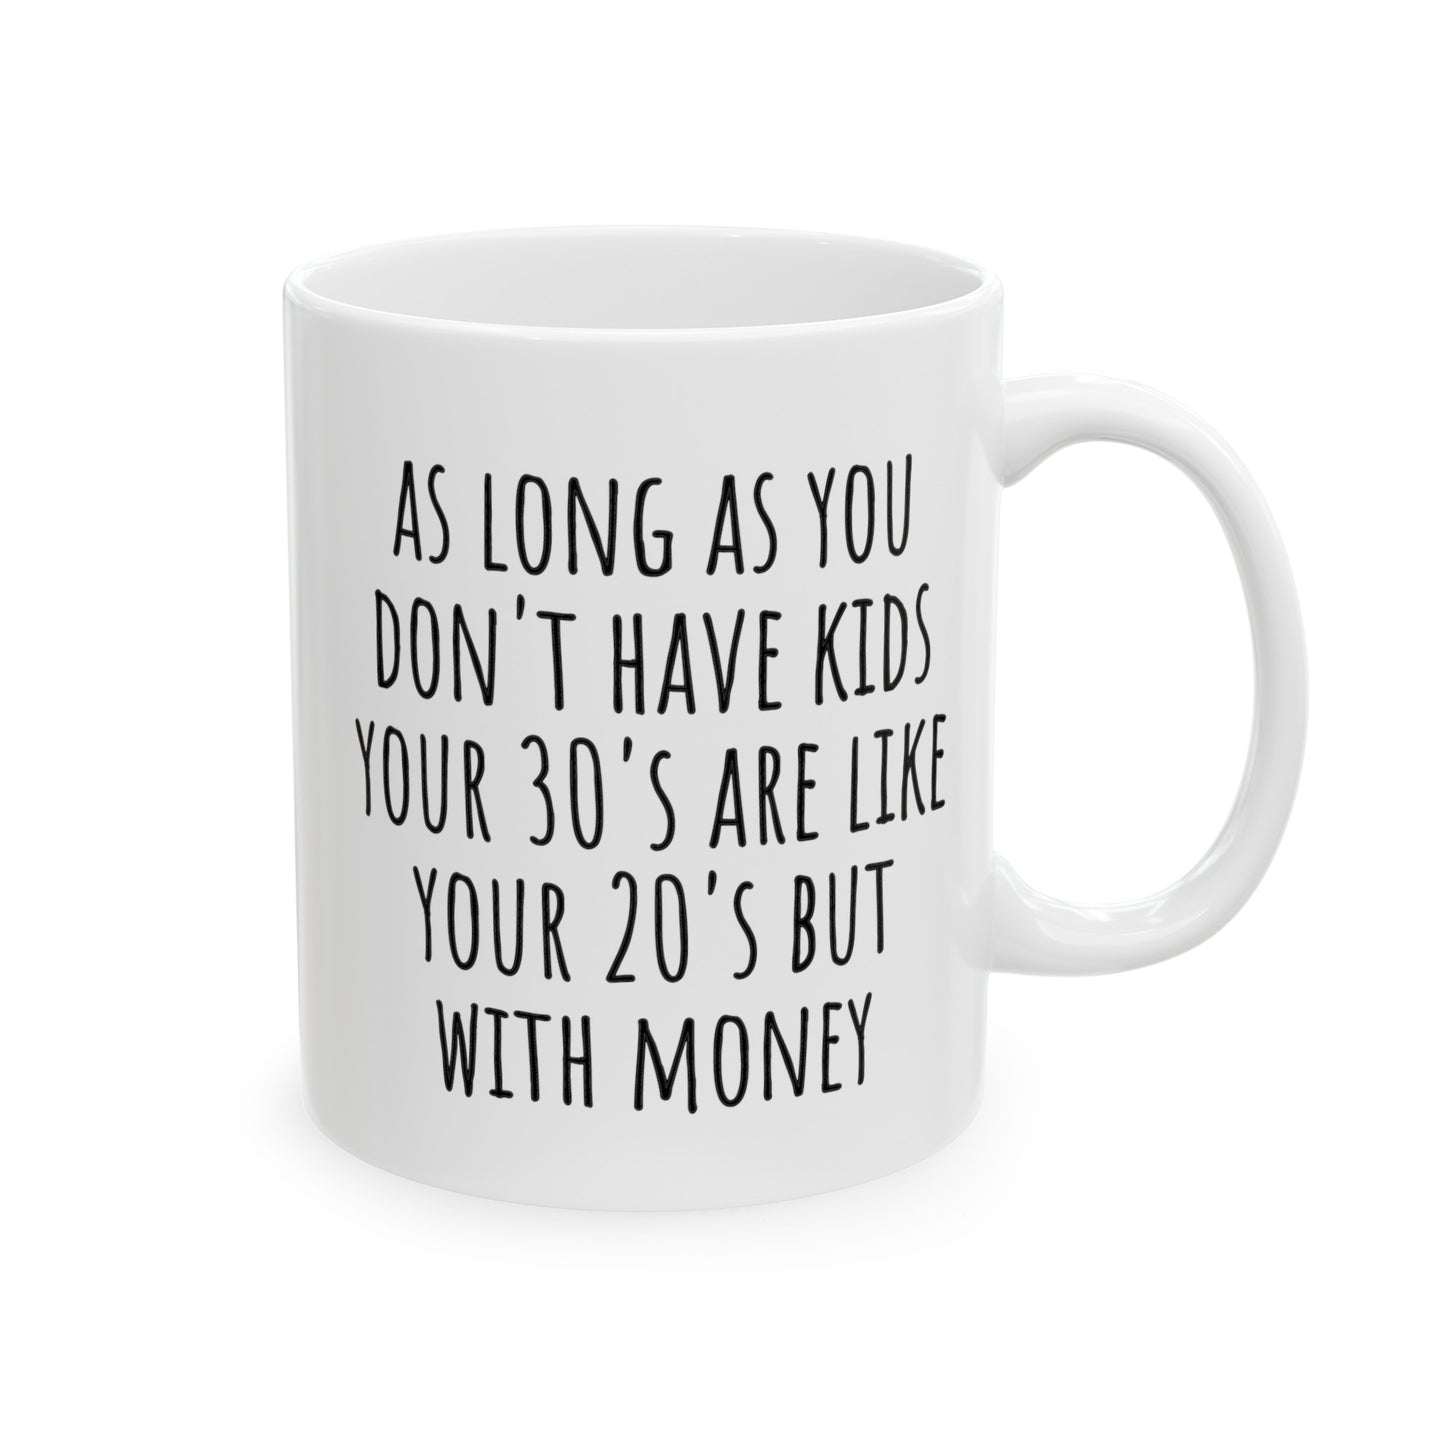 Your 30's Mug